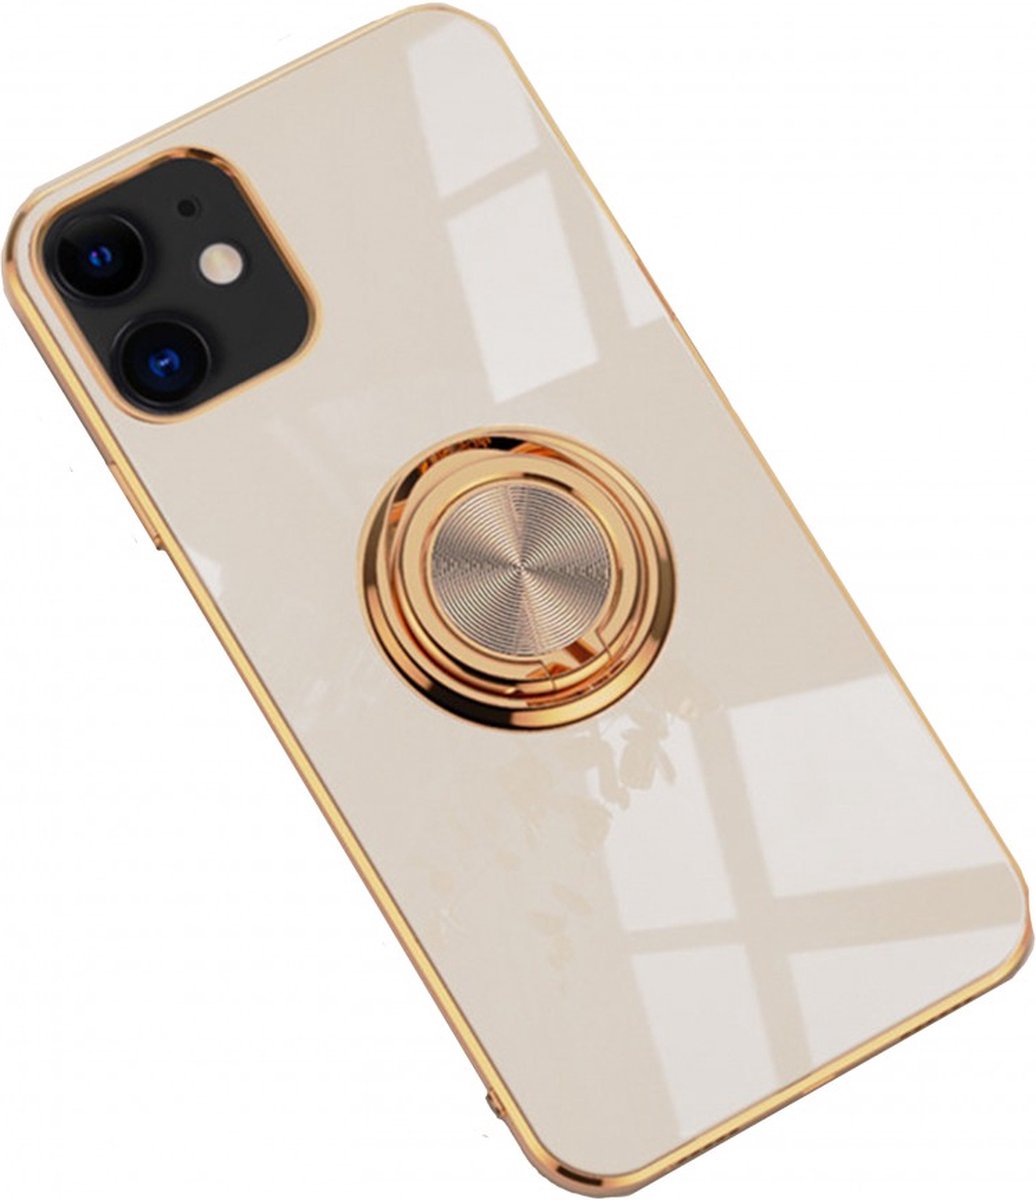 iPhone 12/12 Pro hoesje met ring - Kickstand - iPhone - Goud detail - Handig - Hoesje met ring - 5 verschillende kleuren - zalm roze - Grijs/blauw - Donker groen - Zwart - Paars